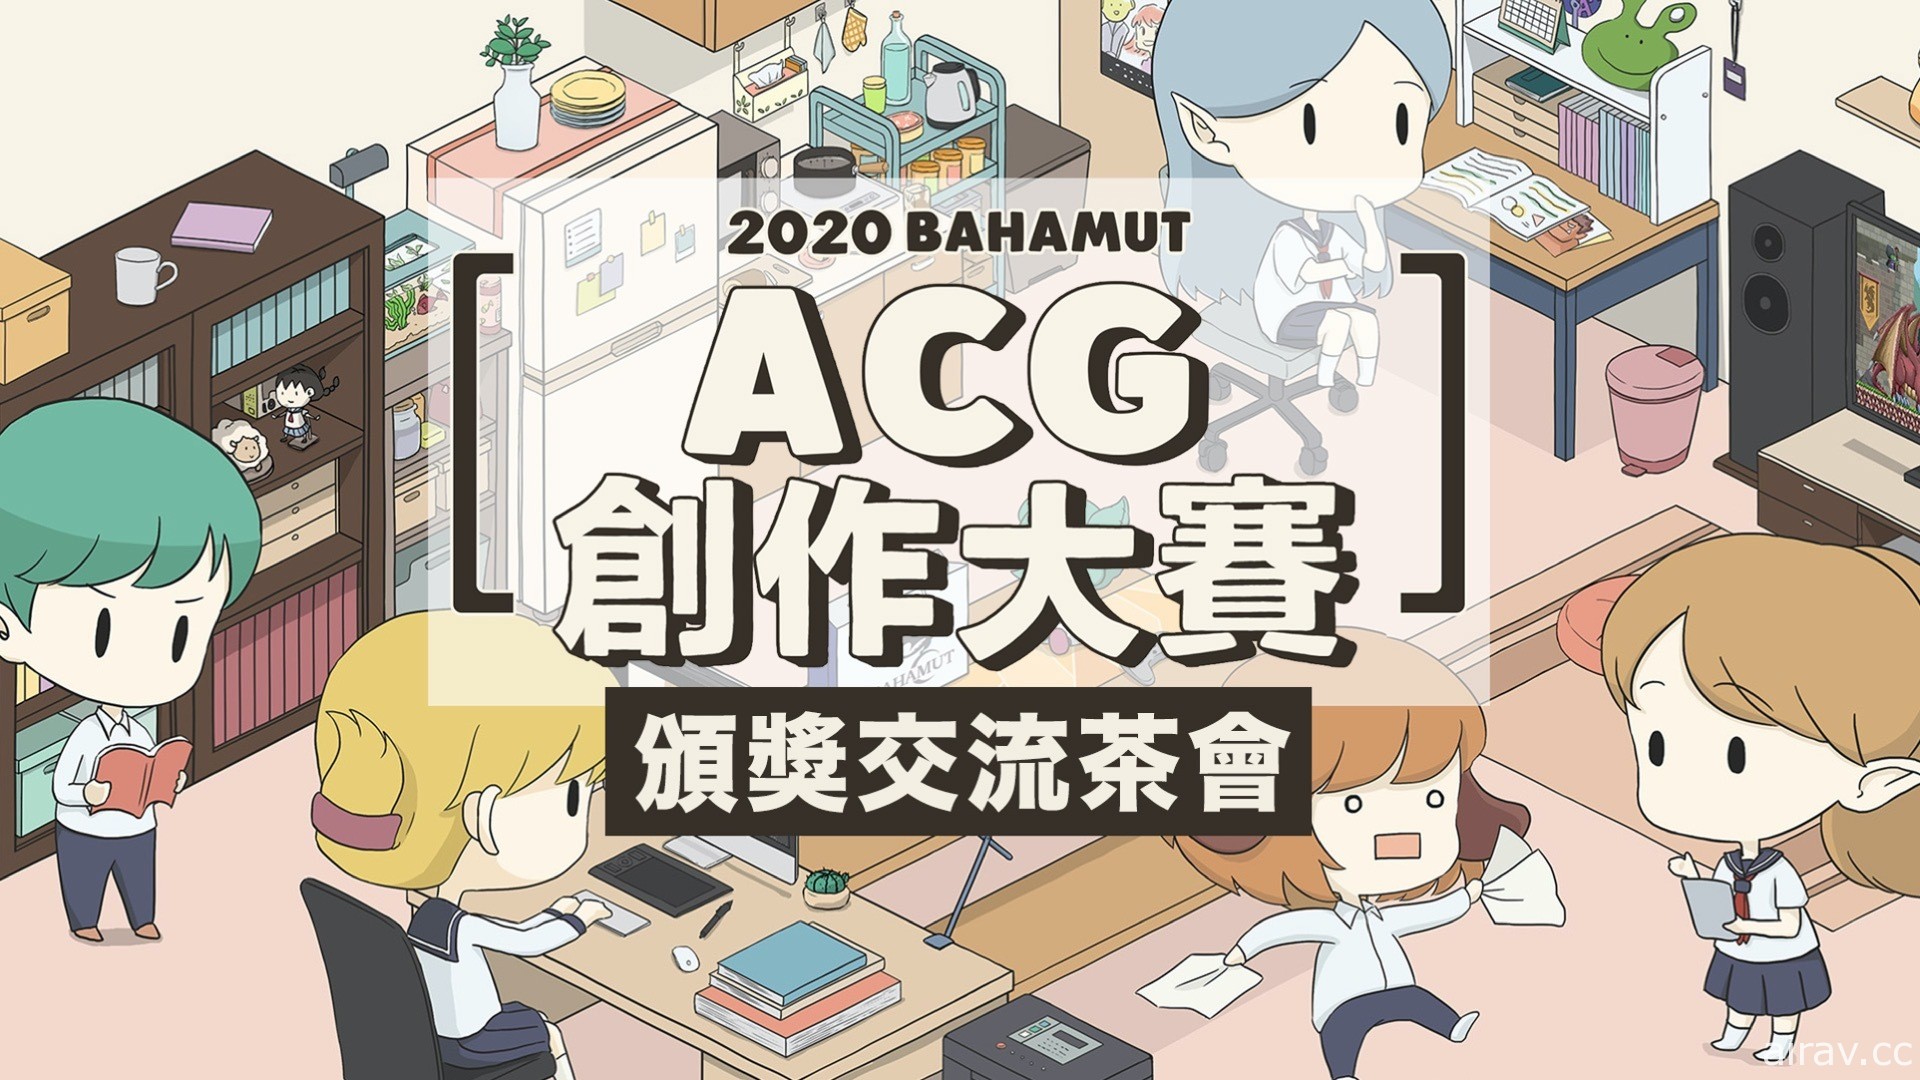 巴哈姆特 2020 ACG 創作大賽今頒獎 評審期許創作者為業界注入新活力